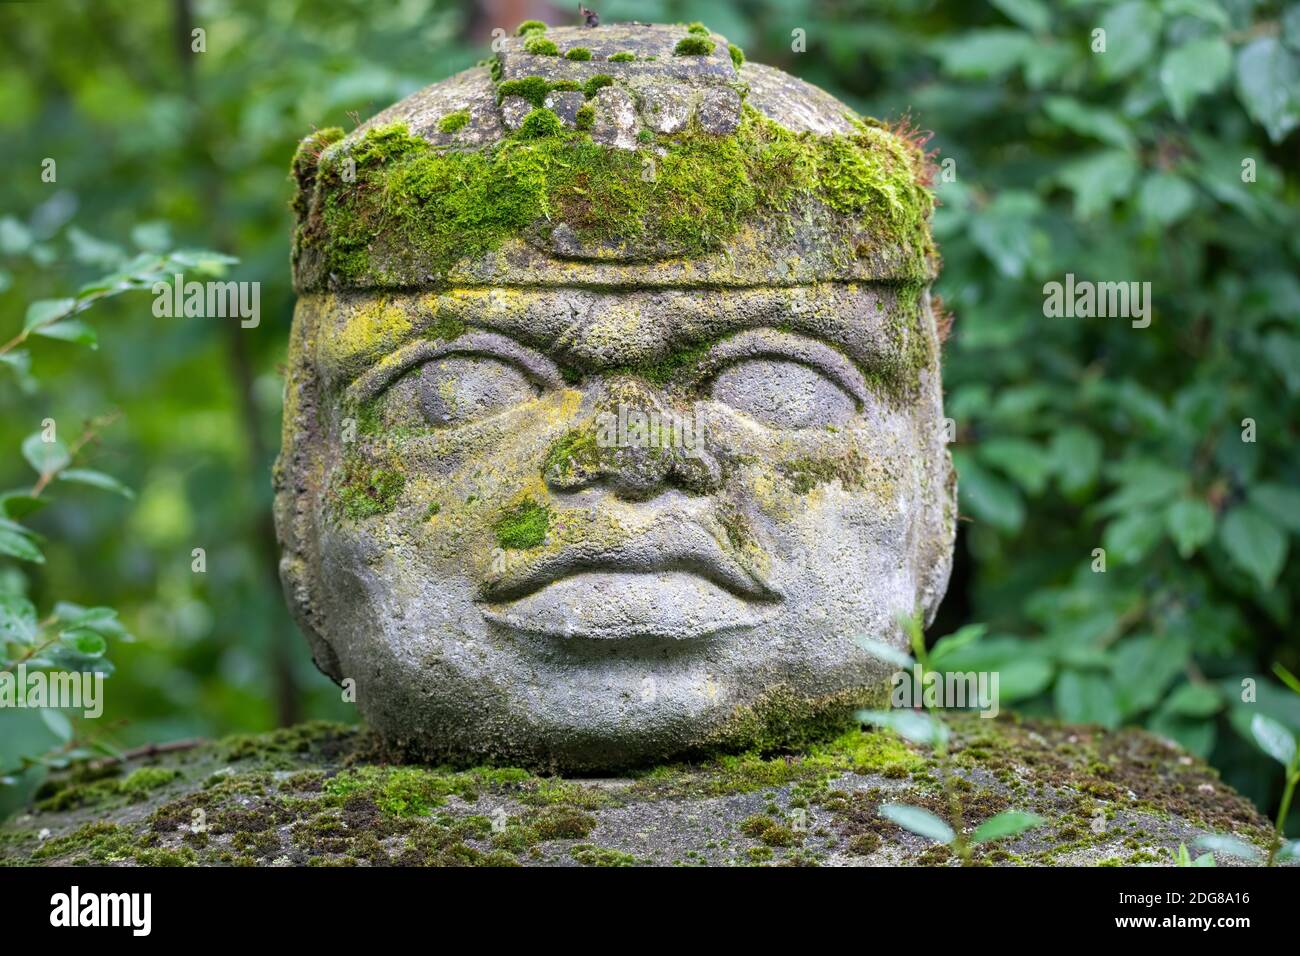 Réplique de la civilisation Olmec Sculpture, tête colossale sculptée de pierre dans la forêt. Grande statue de tête de pierre dans une jungle. Banque D'Images